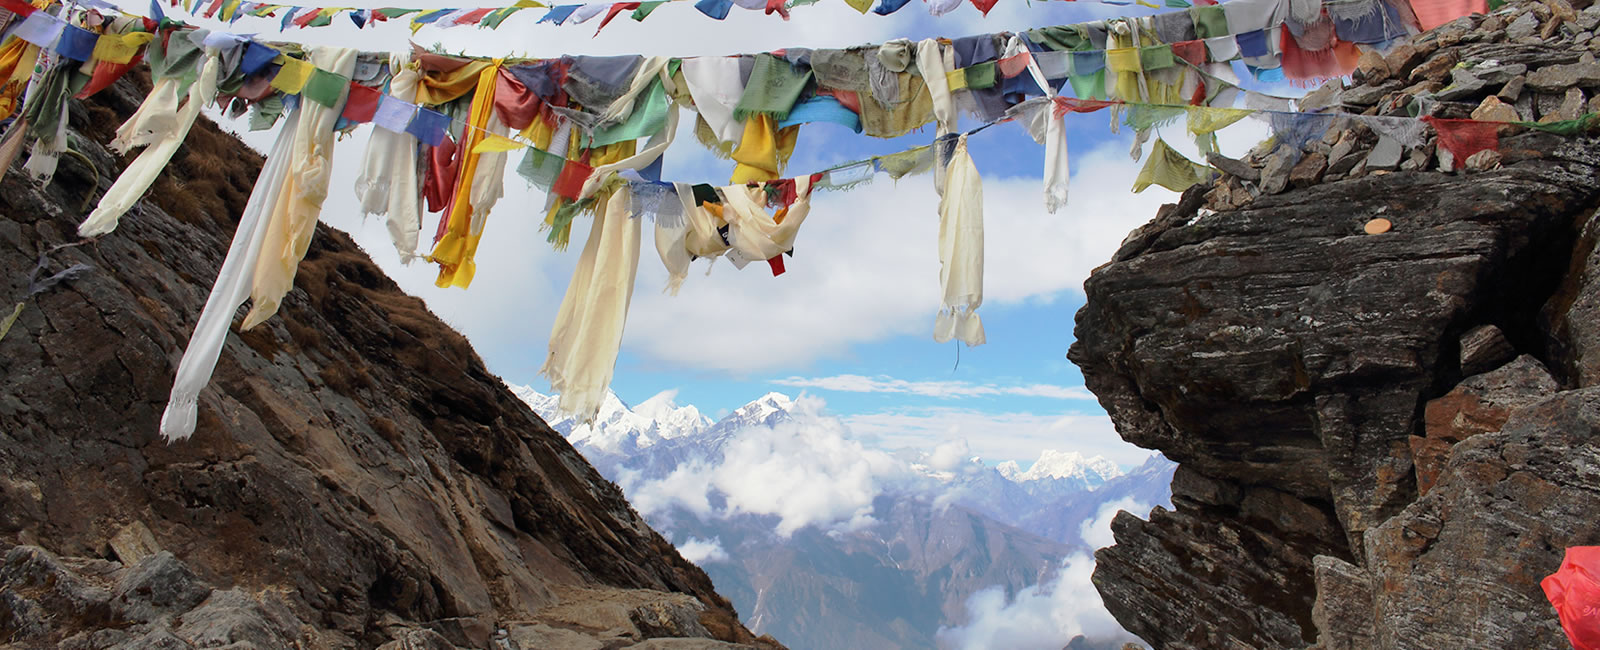 mera-peak-climbing-nepal 